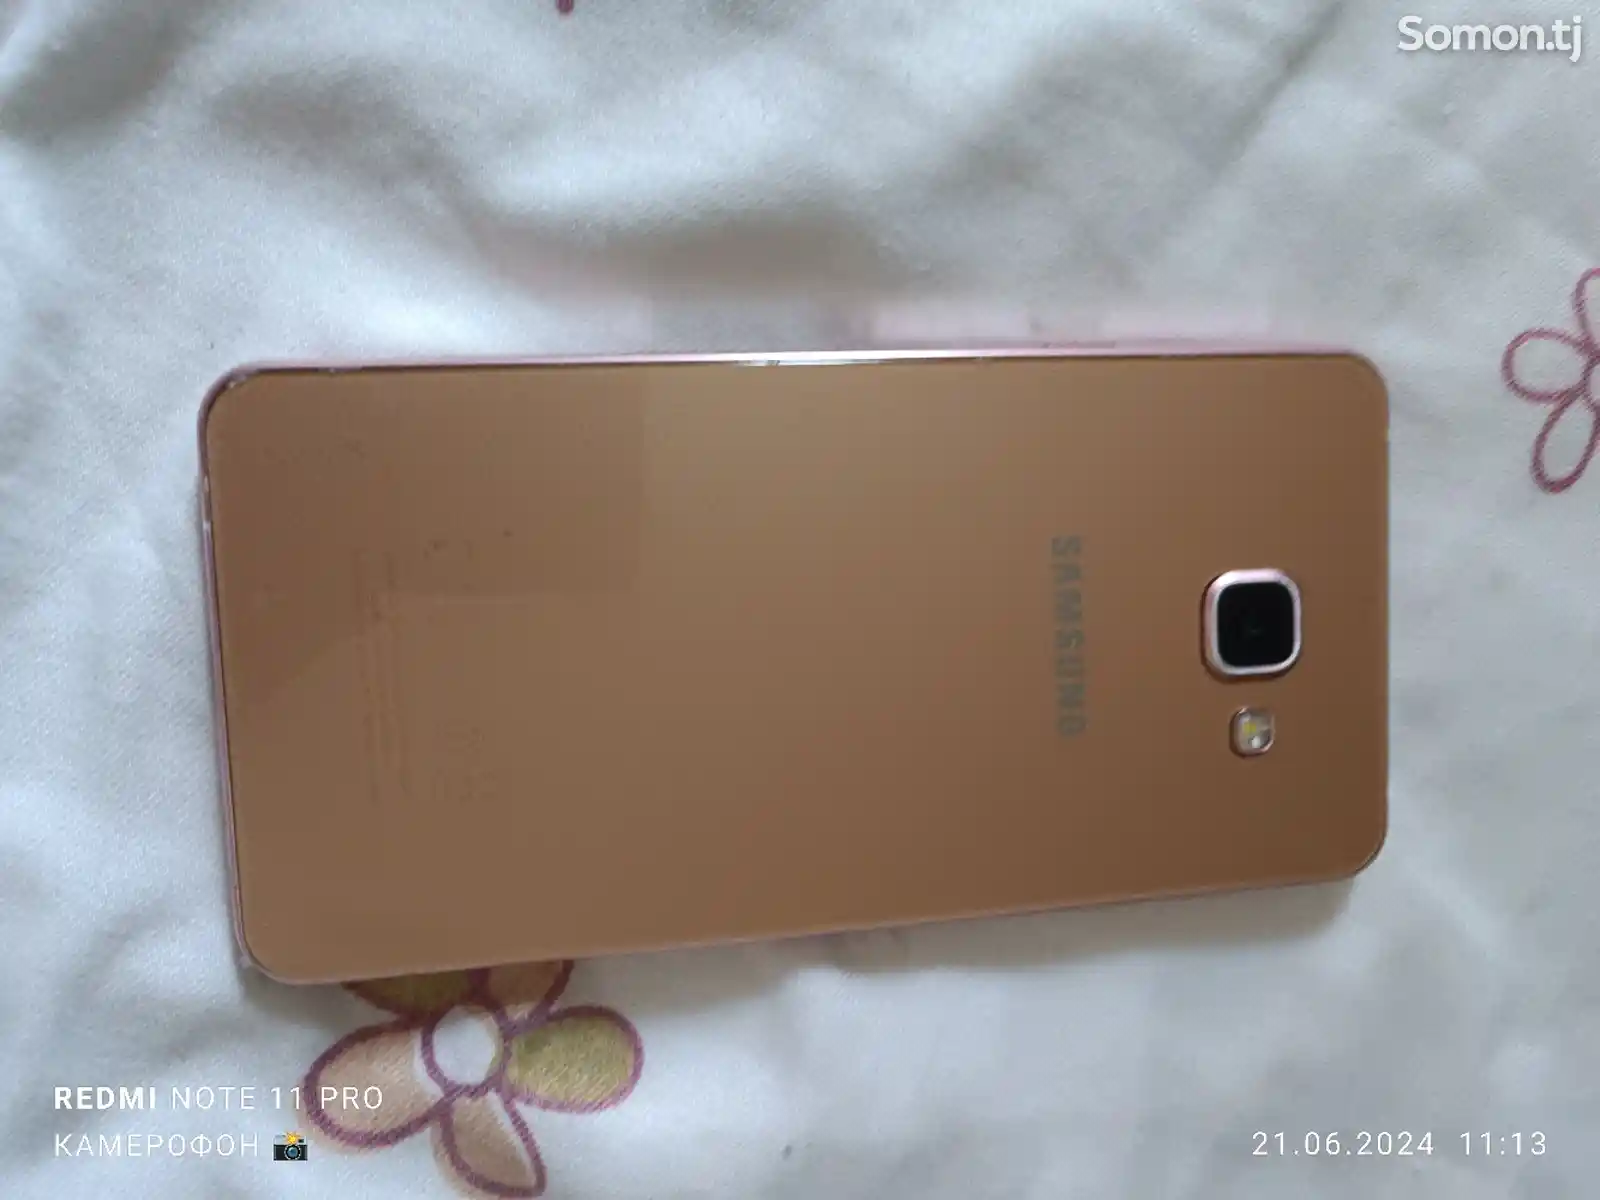 Samsung Galaxy A7 16gb-3